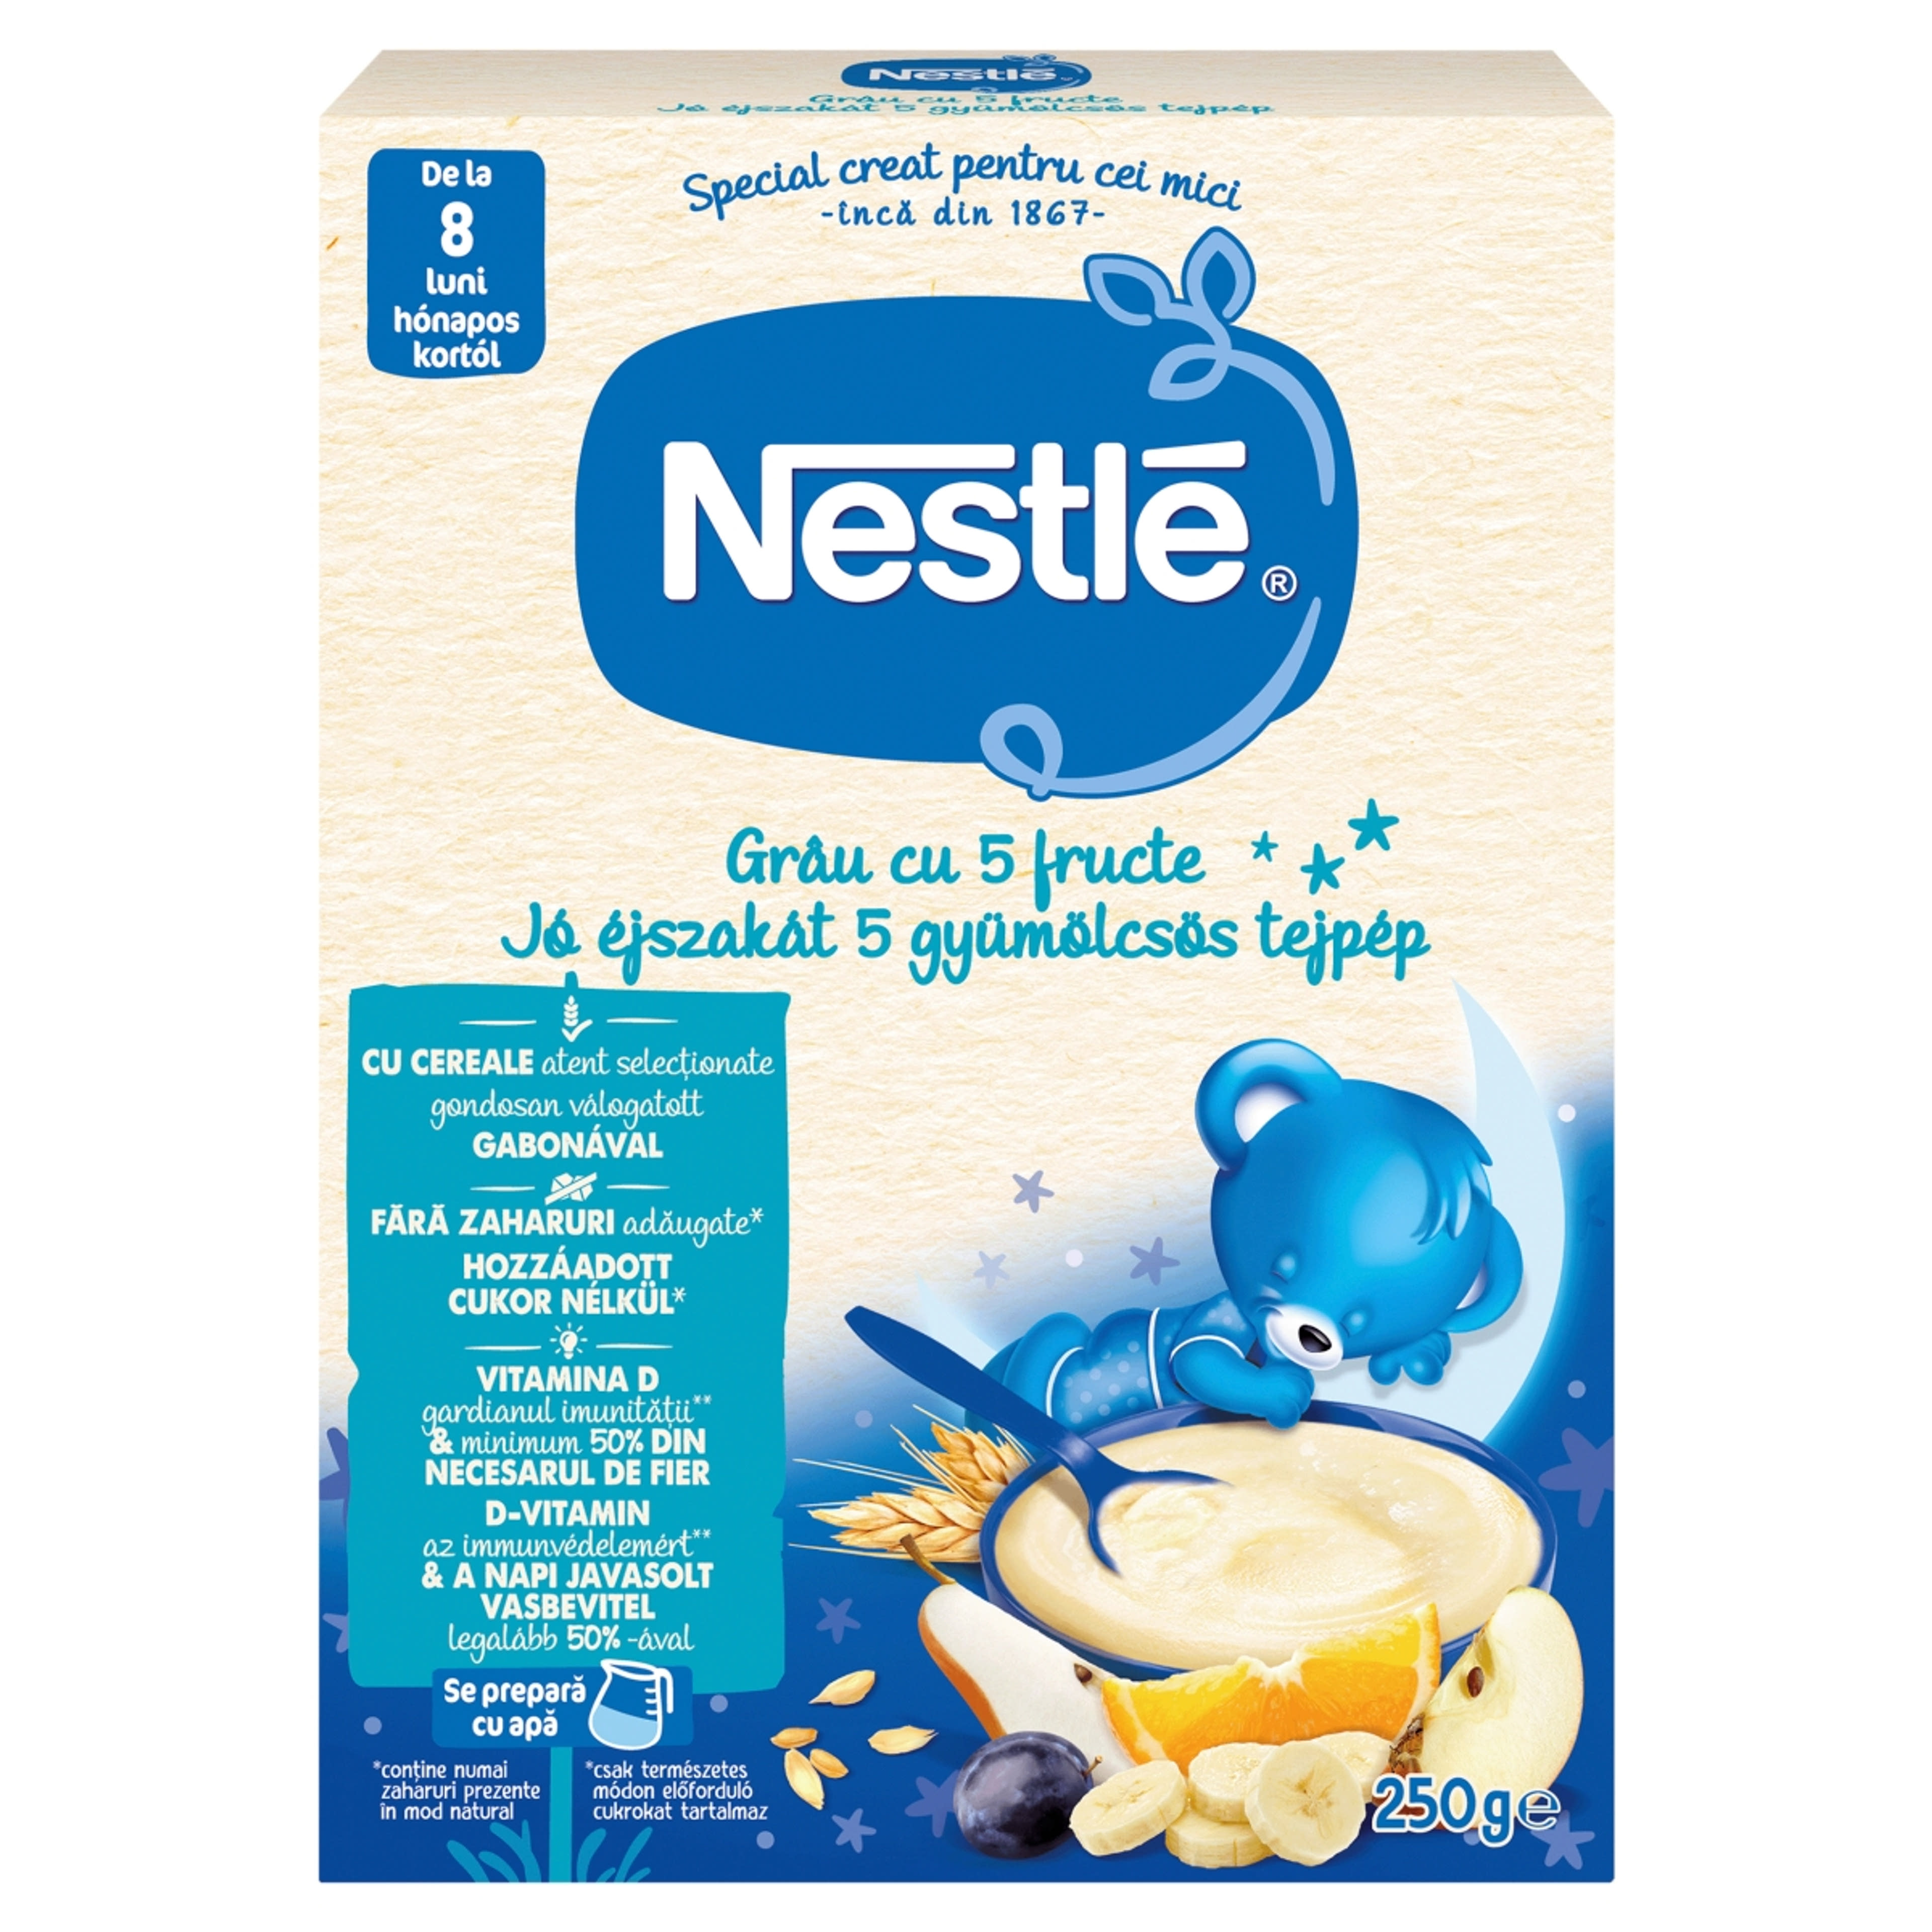 Nestle jó éjszakát 5 gyümölcsös tejpép 8 hónapos kortól - 250 g-1